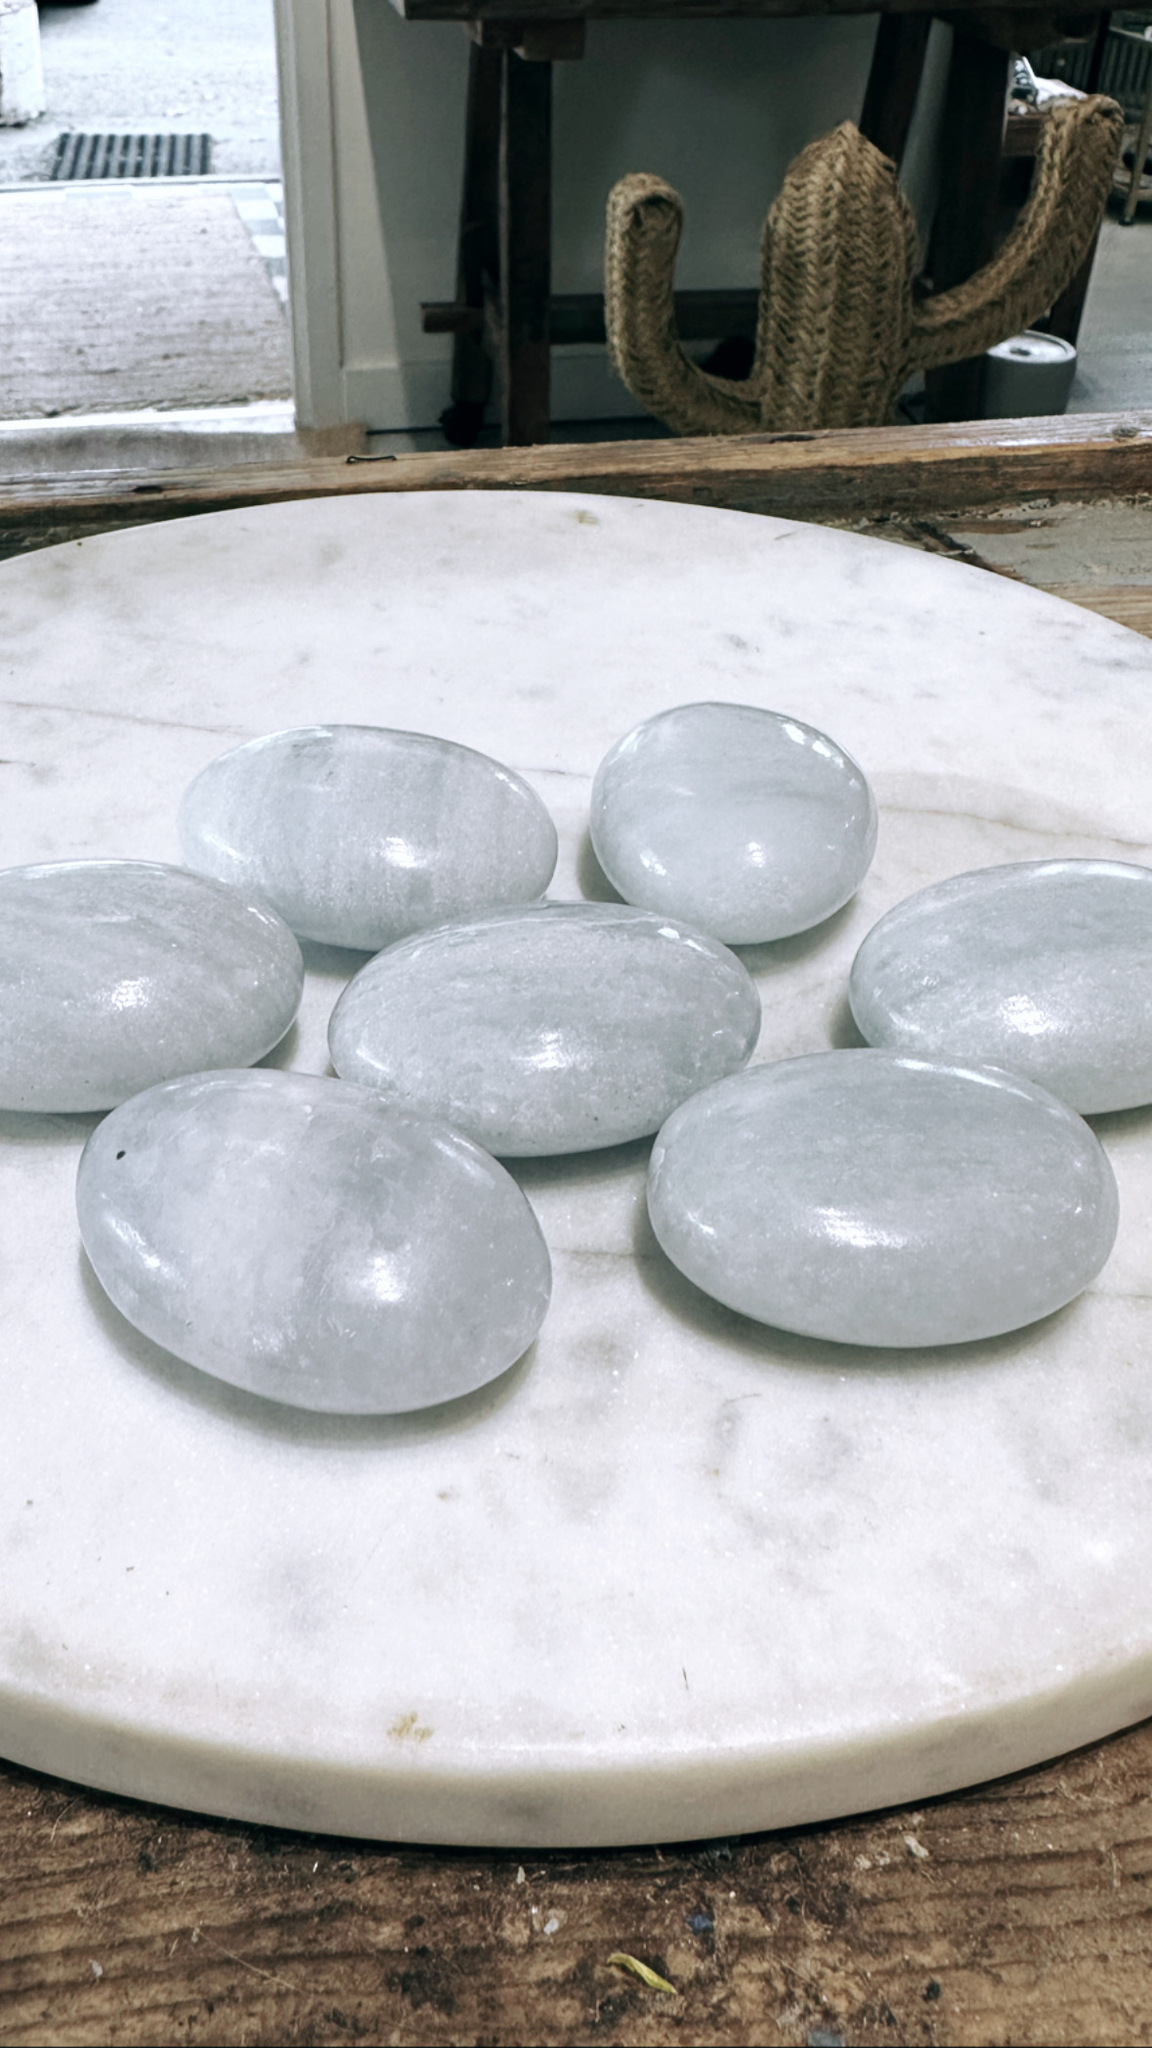 Blå kalcit, palmstone